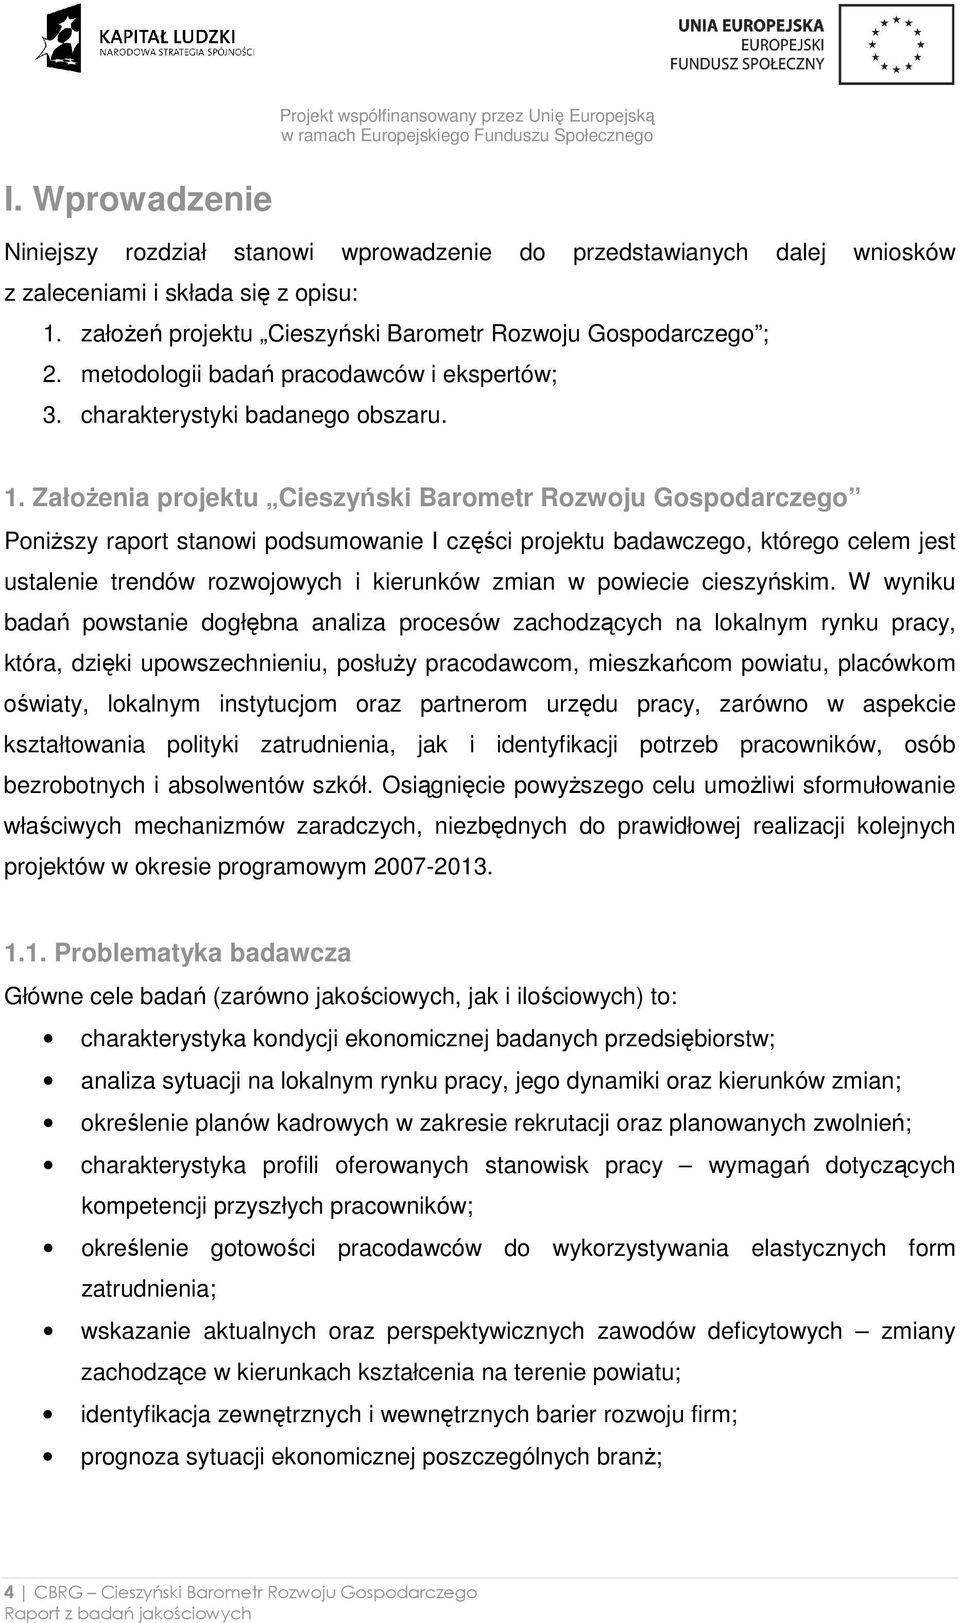 ZałoŜenia projektu Cieszyński Barometr Rozwoju Gospodarczego PoniŜszy raport stanowi podsumowanie I części projektu badawczego, którego celem jest ustalenie trendów rozwojowych i kierunków zmian w